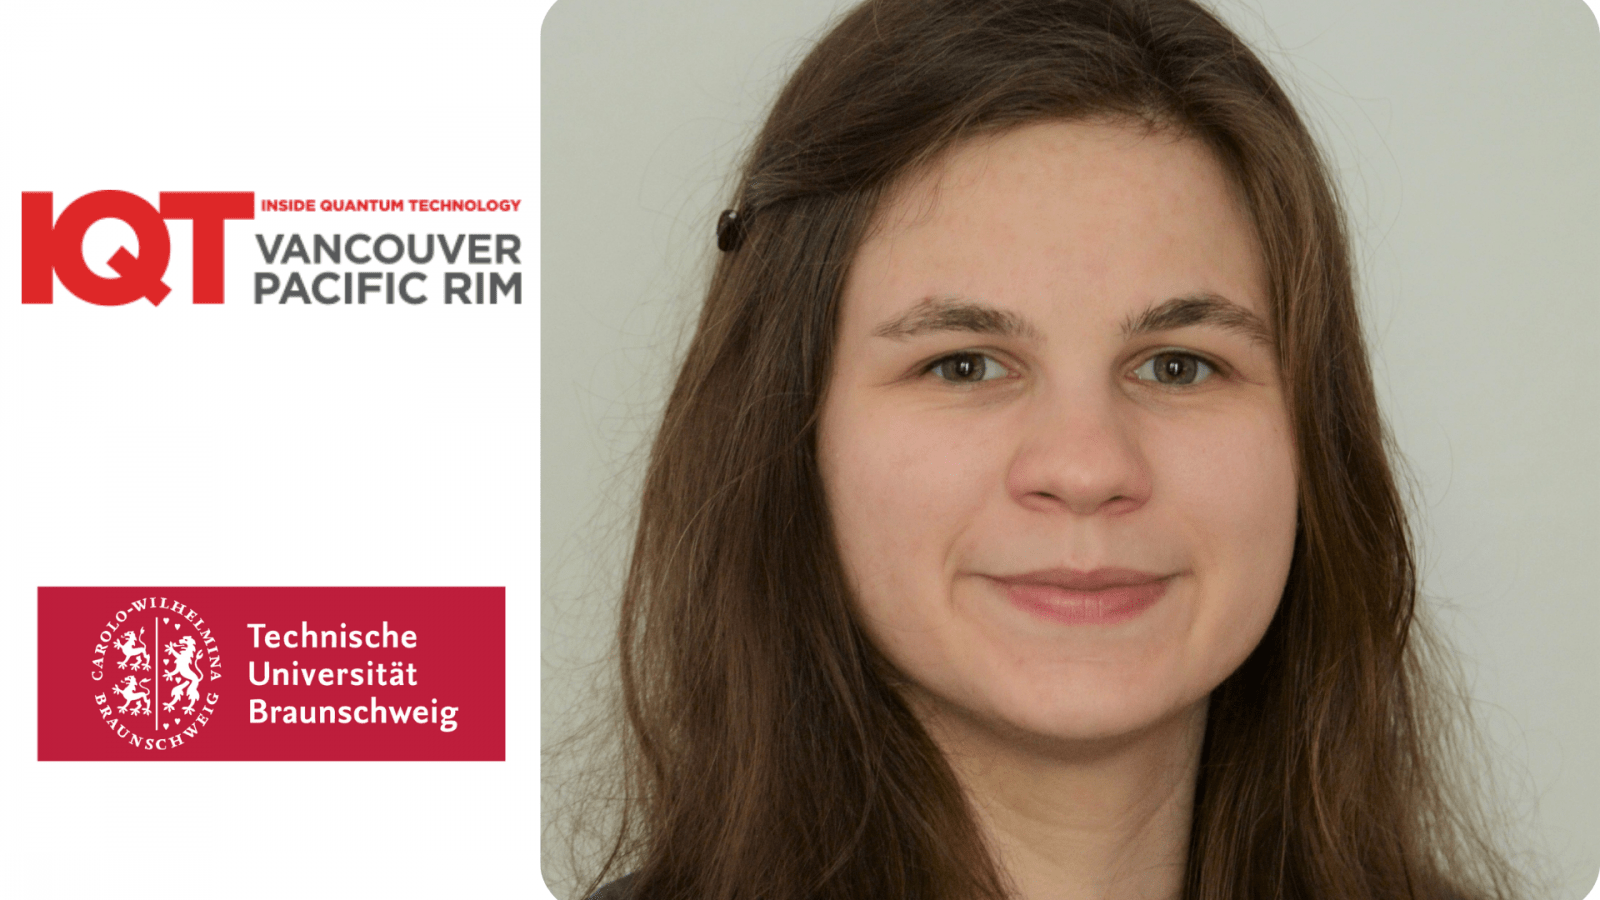 Aggiornamento IQT Vancouver/Pacific Rim: Franziska Greinert, assistente di ricerca dell'Università Tecnica di Braunschweig, è relatrice del 2024 - Inside Quantum Technology